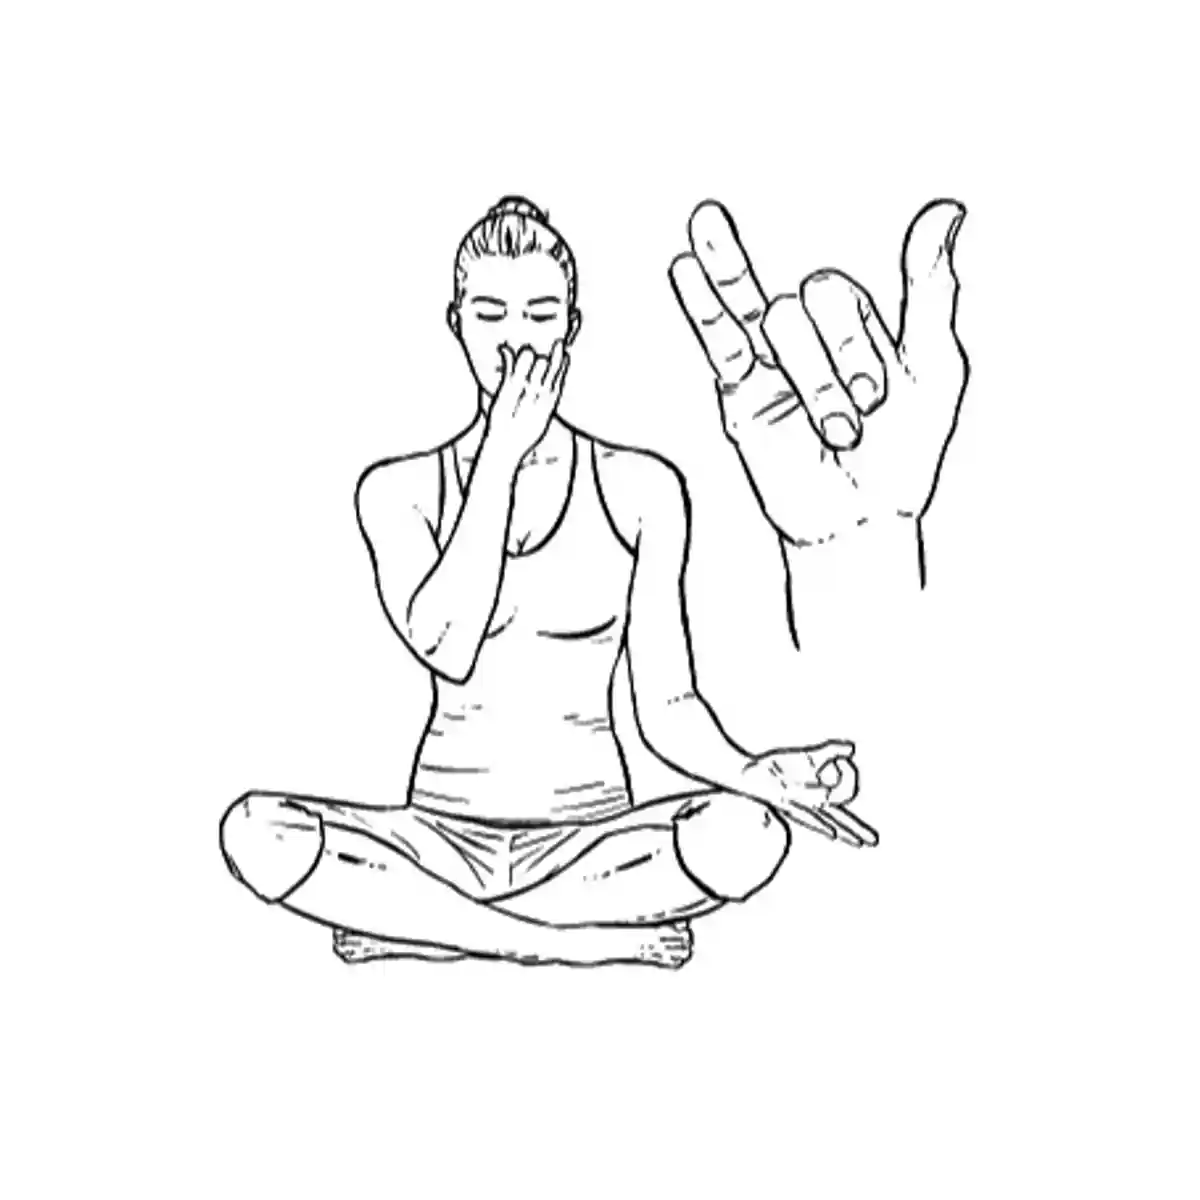 Техника выполнения попеременного дыхания Нади Шодхана. Изначально делаем вдох, например, правой ноздрей, при этом закрывая левую. Фото: yandex.zen